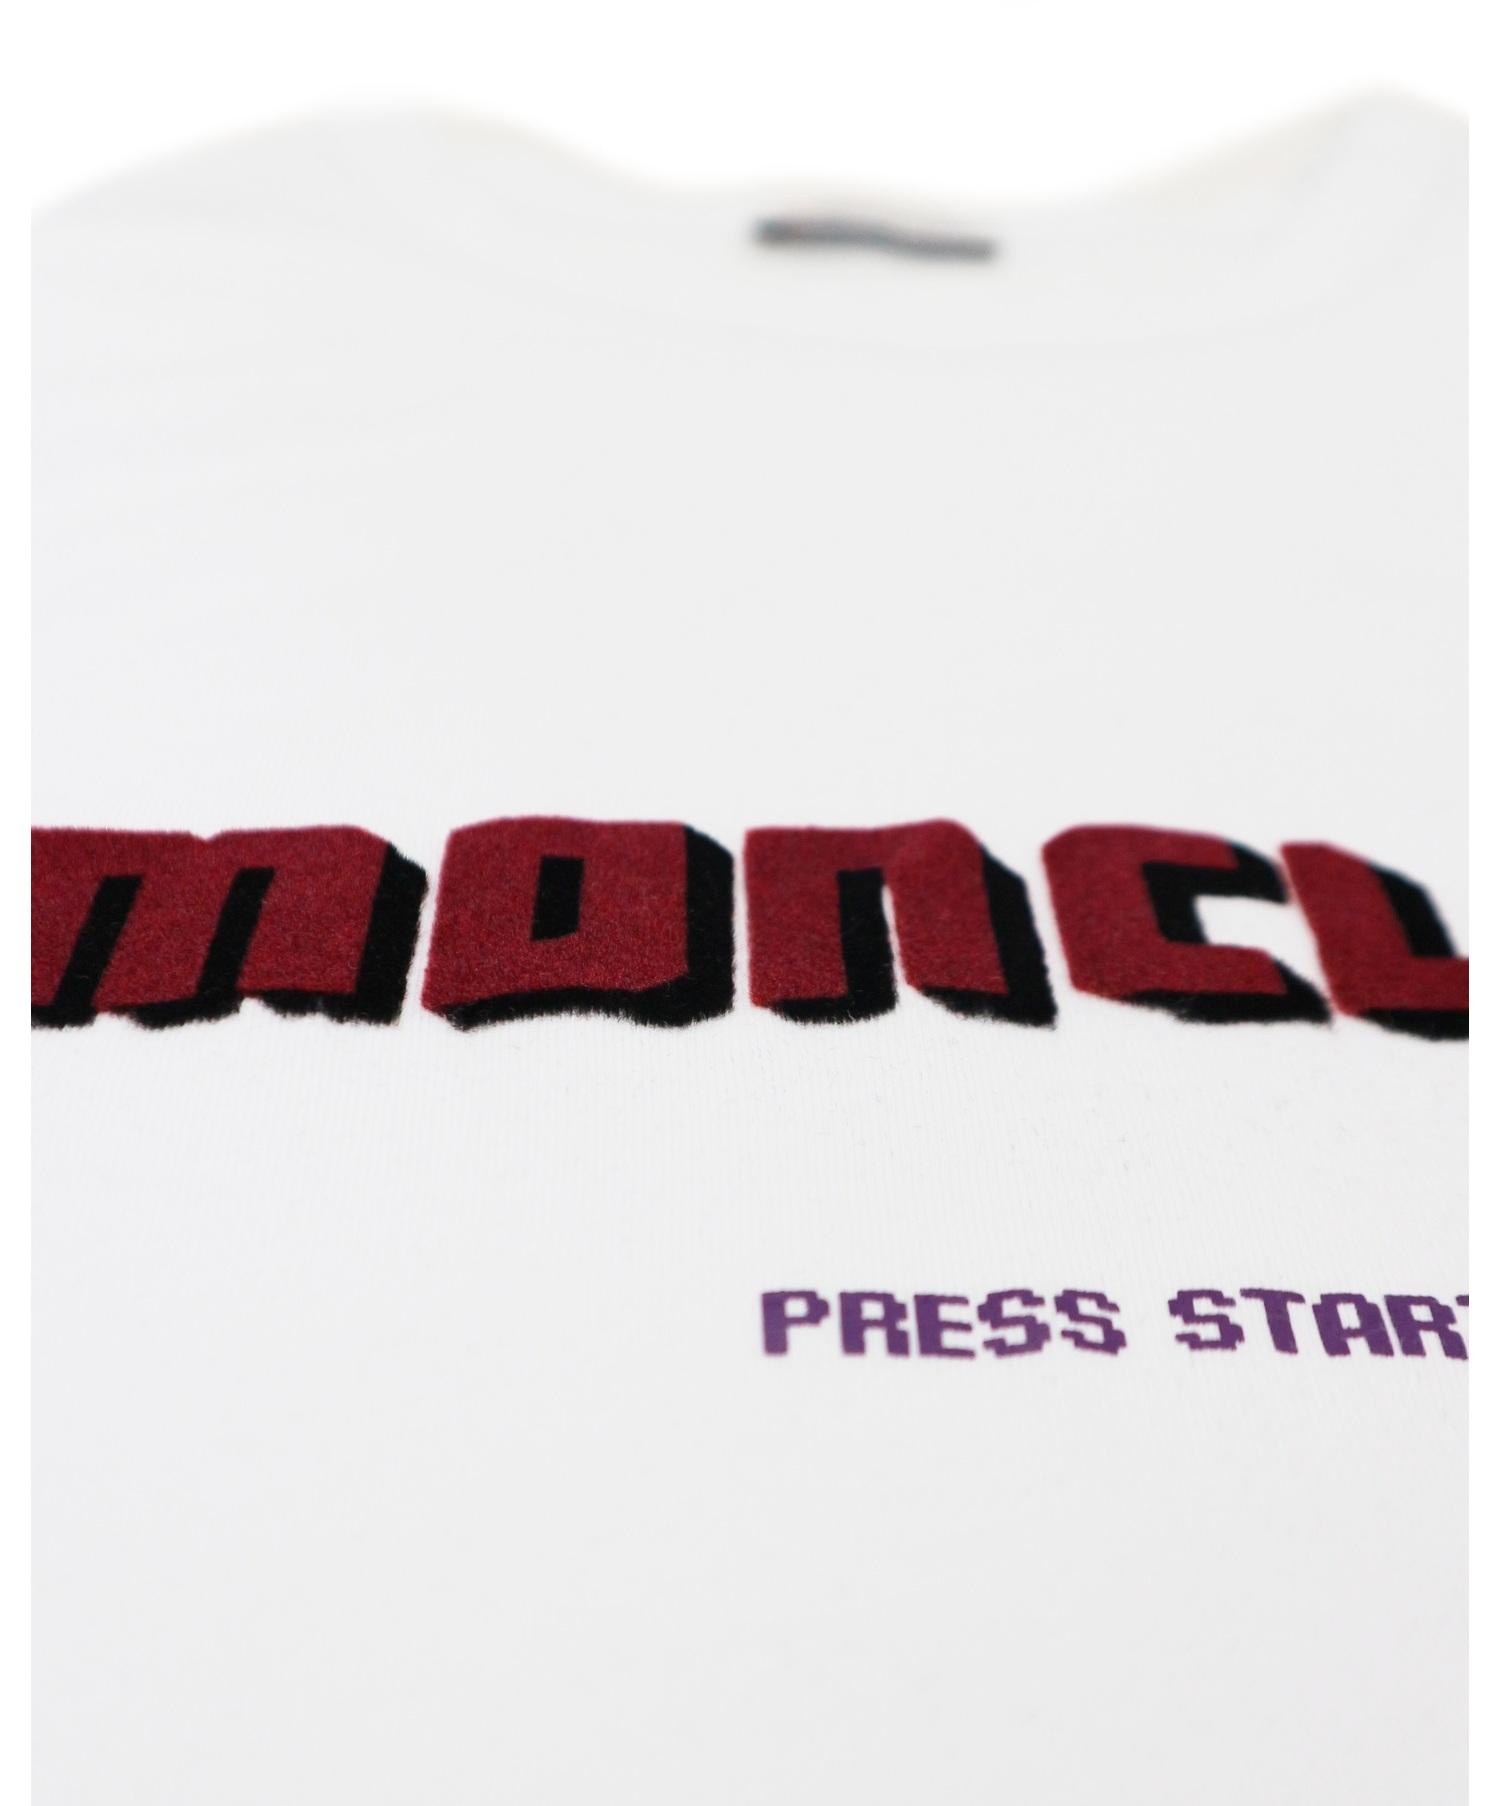 MONCLER (モンクレール) ロゴプリントTシャツ ホワイト×ボルドー 